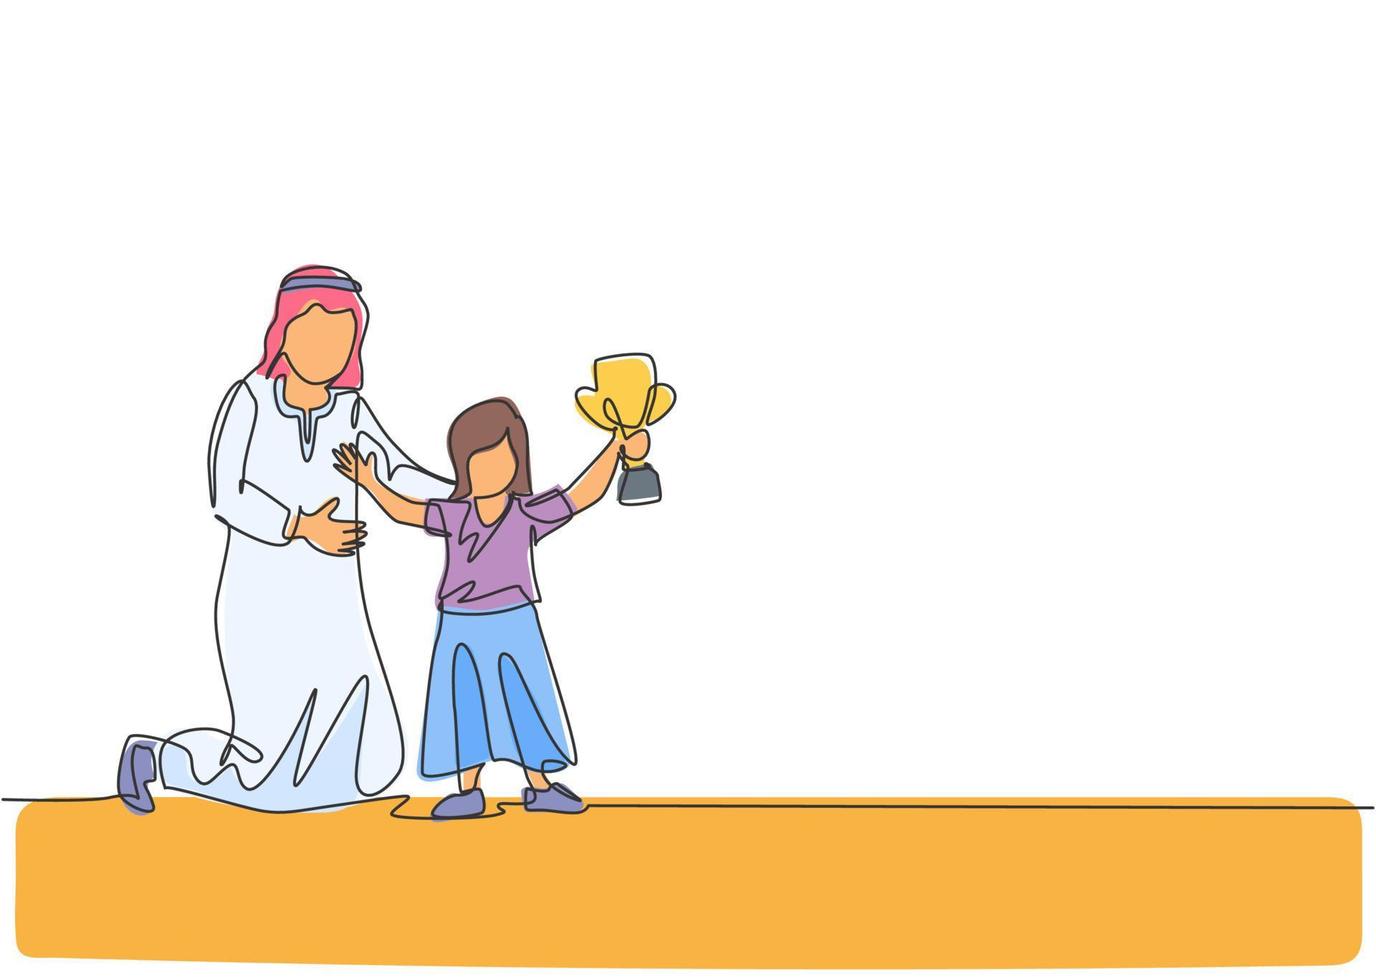 un disegno a tratteggio del giovane papà arabo si congratula con sua figlia per aver vinto l'illustrazione vettoriale del trofeo del premio. felice concetto di genitorialità familiare musulmana islamica. design moderno a linea continua